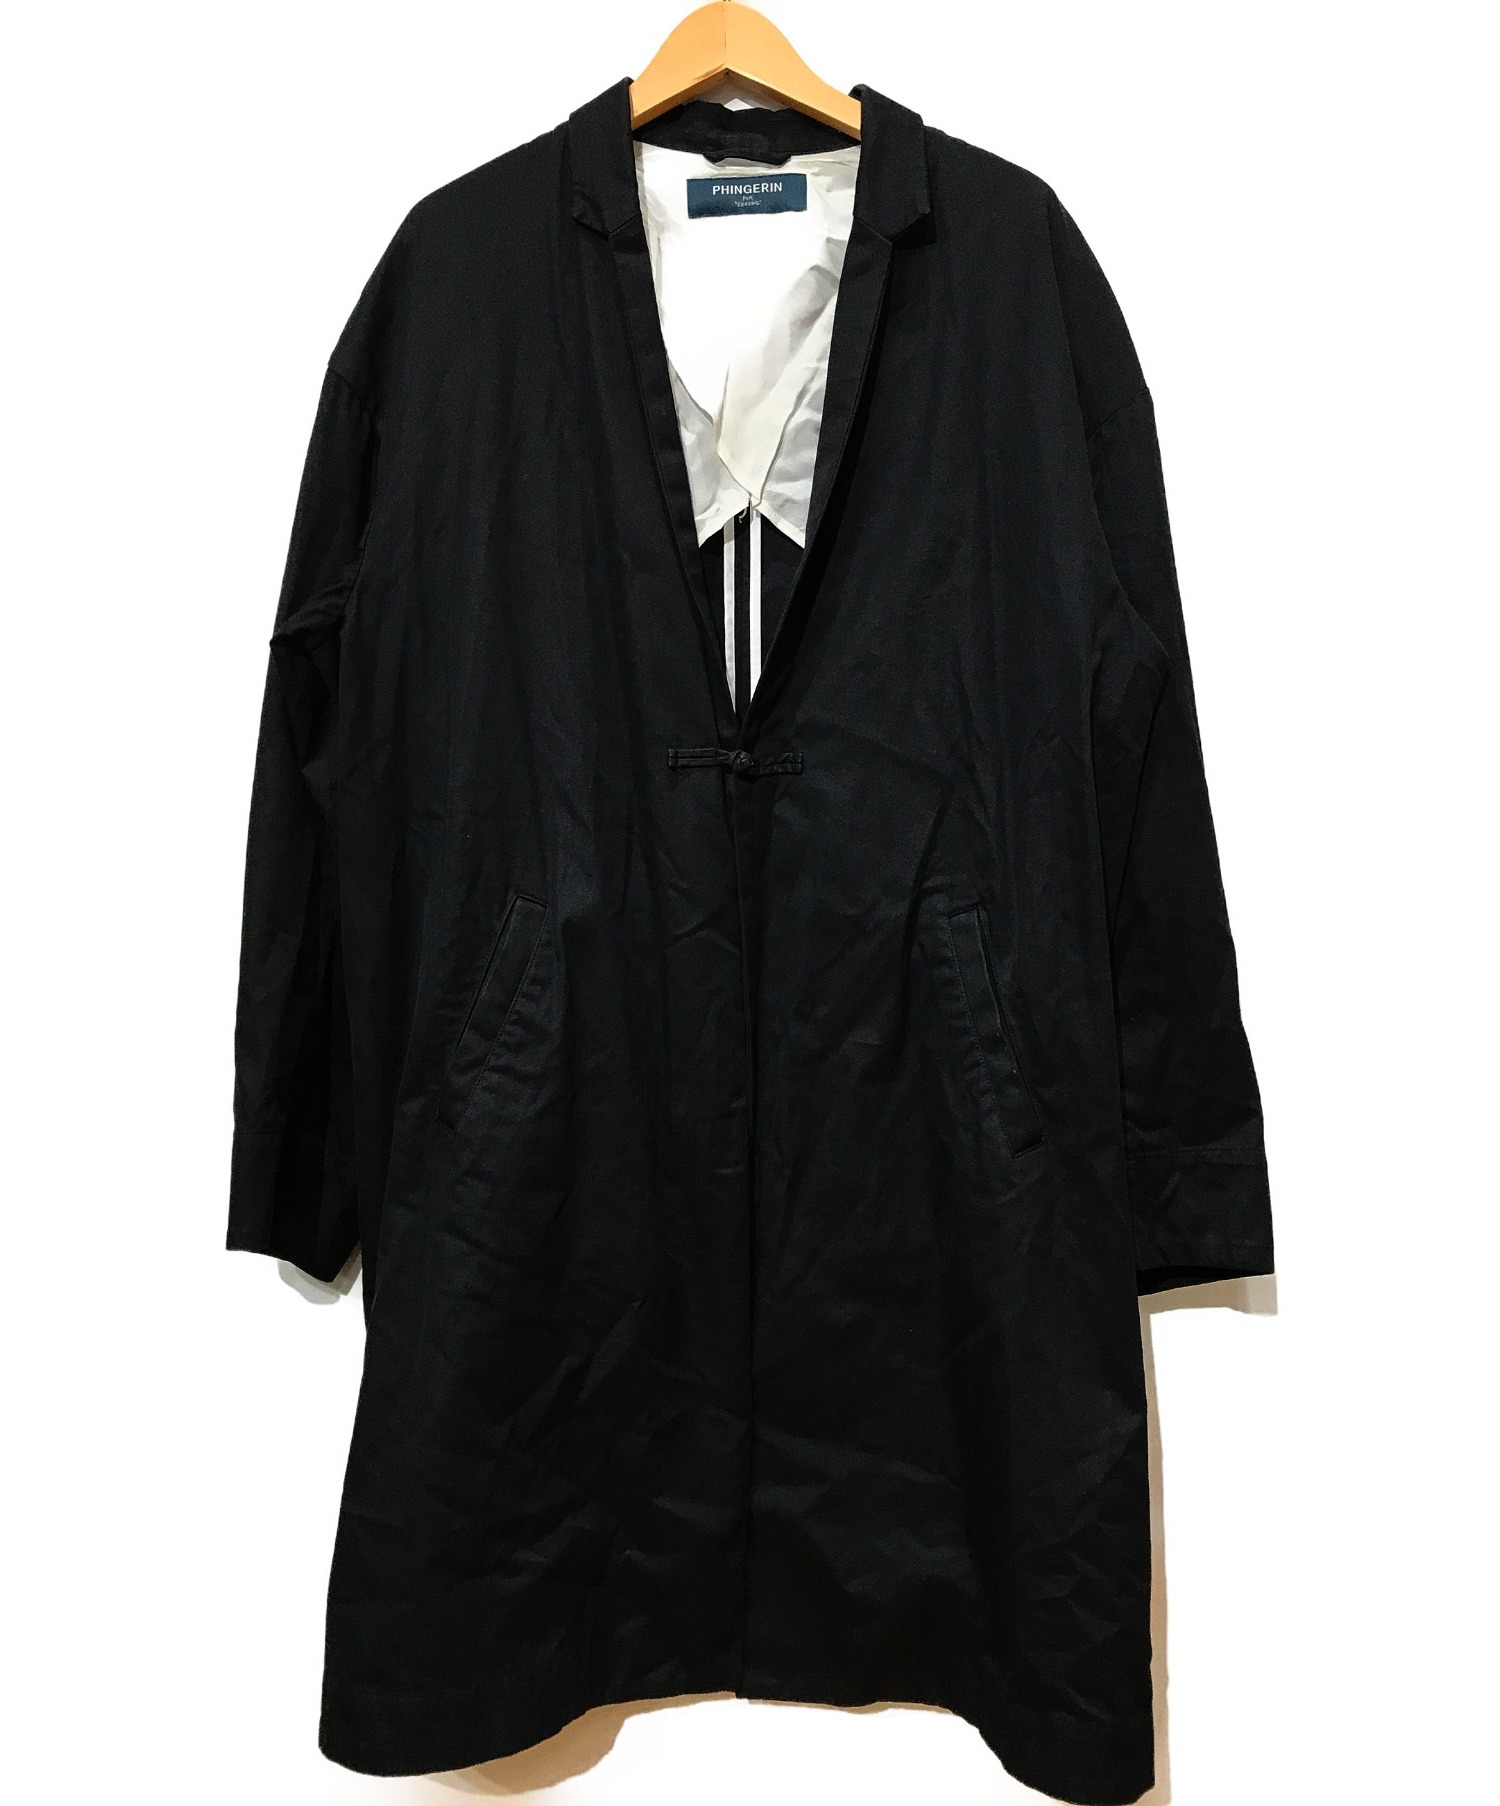 PHINGERIN (フィンガリン) チャイナショートラベルロングコート ブラック サイズ:L